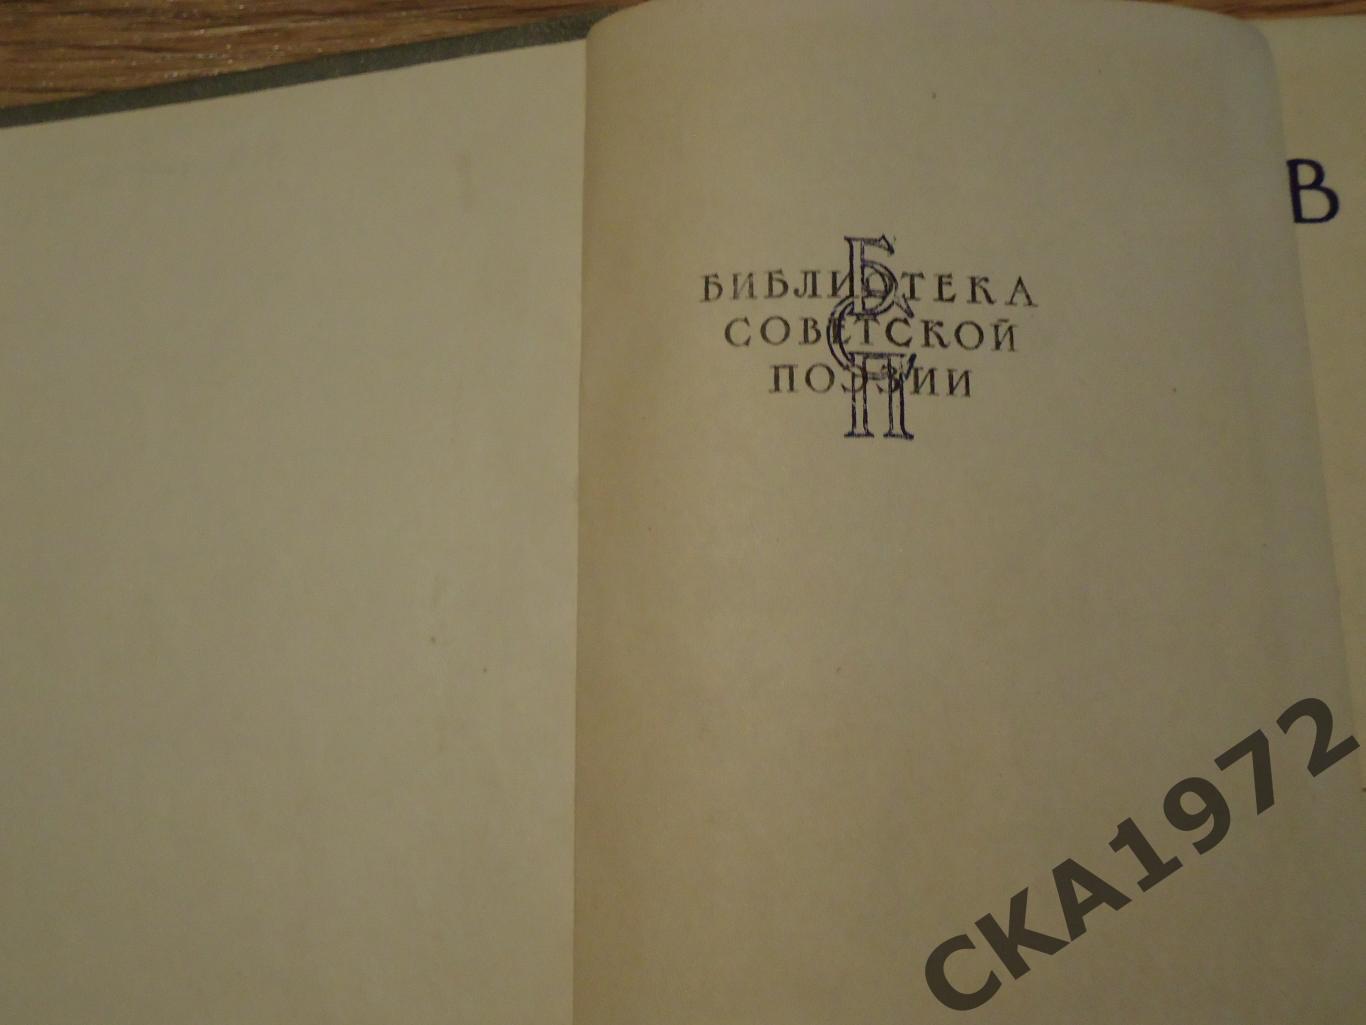 книга Константин Симонов Избранные стихи 1958 год 272 стр 1